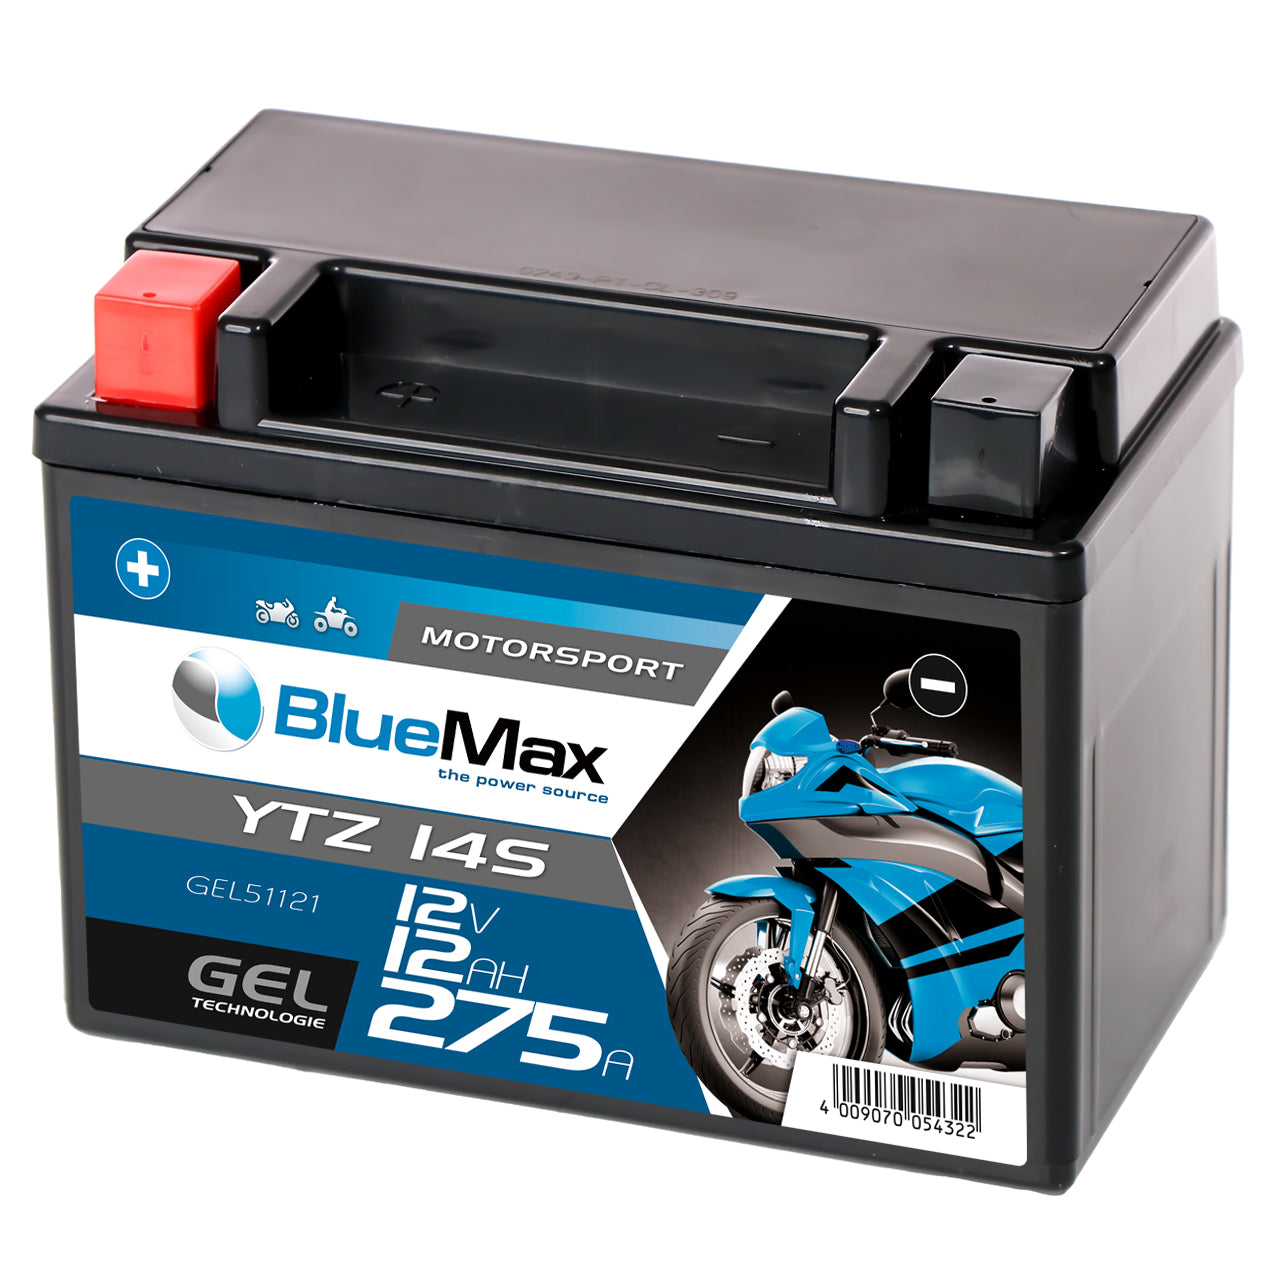 https://www.batterie-industrie-germany.de/cdn/shop/files/Motorradbatterie-Motorsport-GEL-YTZ-14S-BLUEMAXGEL51121-12V-12Ah-Seite-Rechts_1280x.jpg?v=1700662637